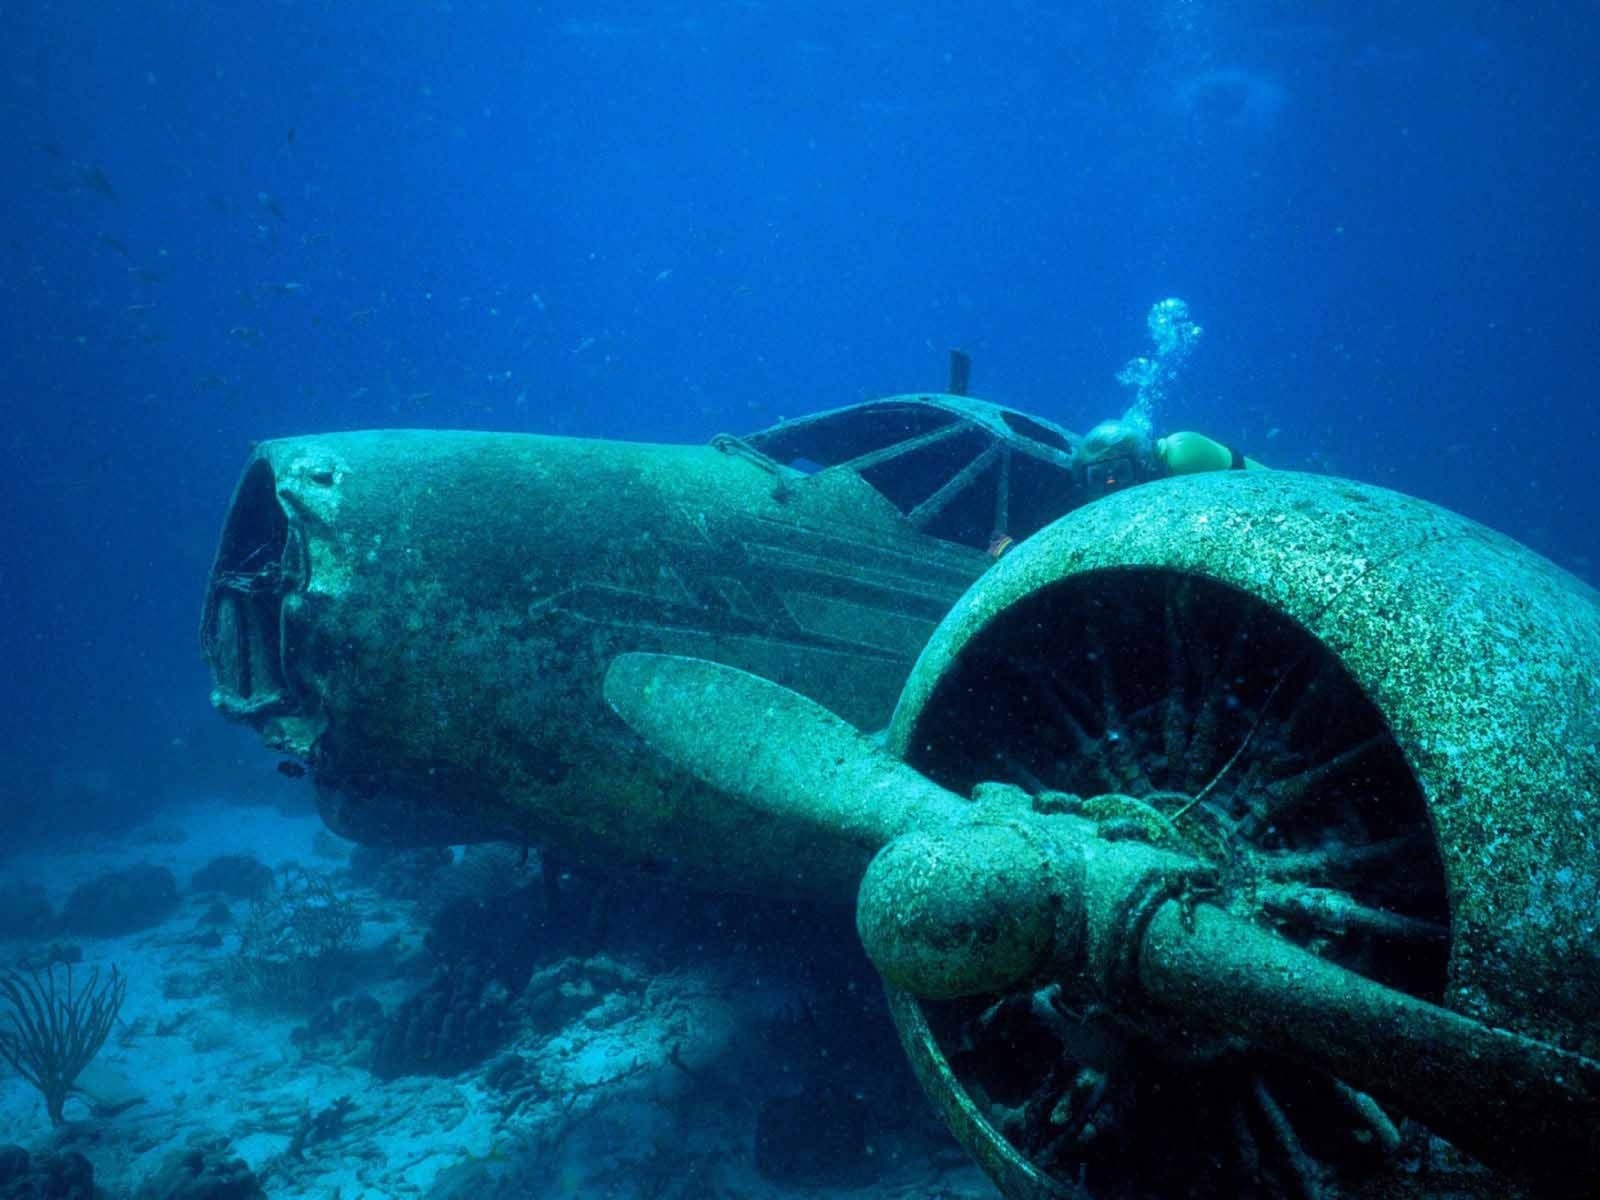 Затонувший самолёт на дне Карибского моря, Аруба. Моря и океаны, интересное, подводный мир